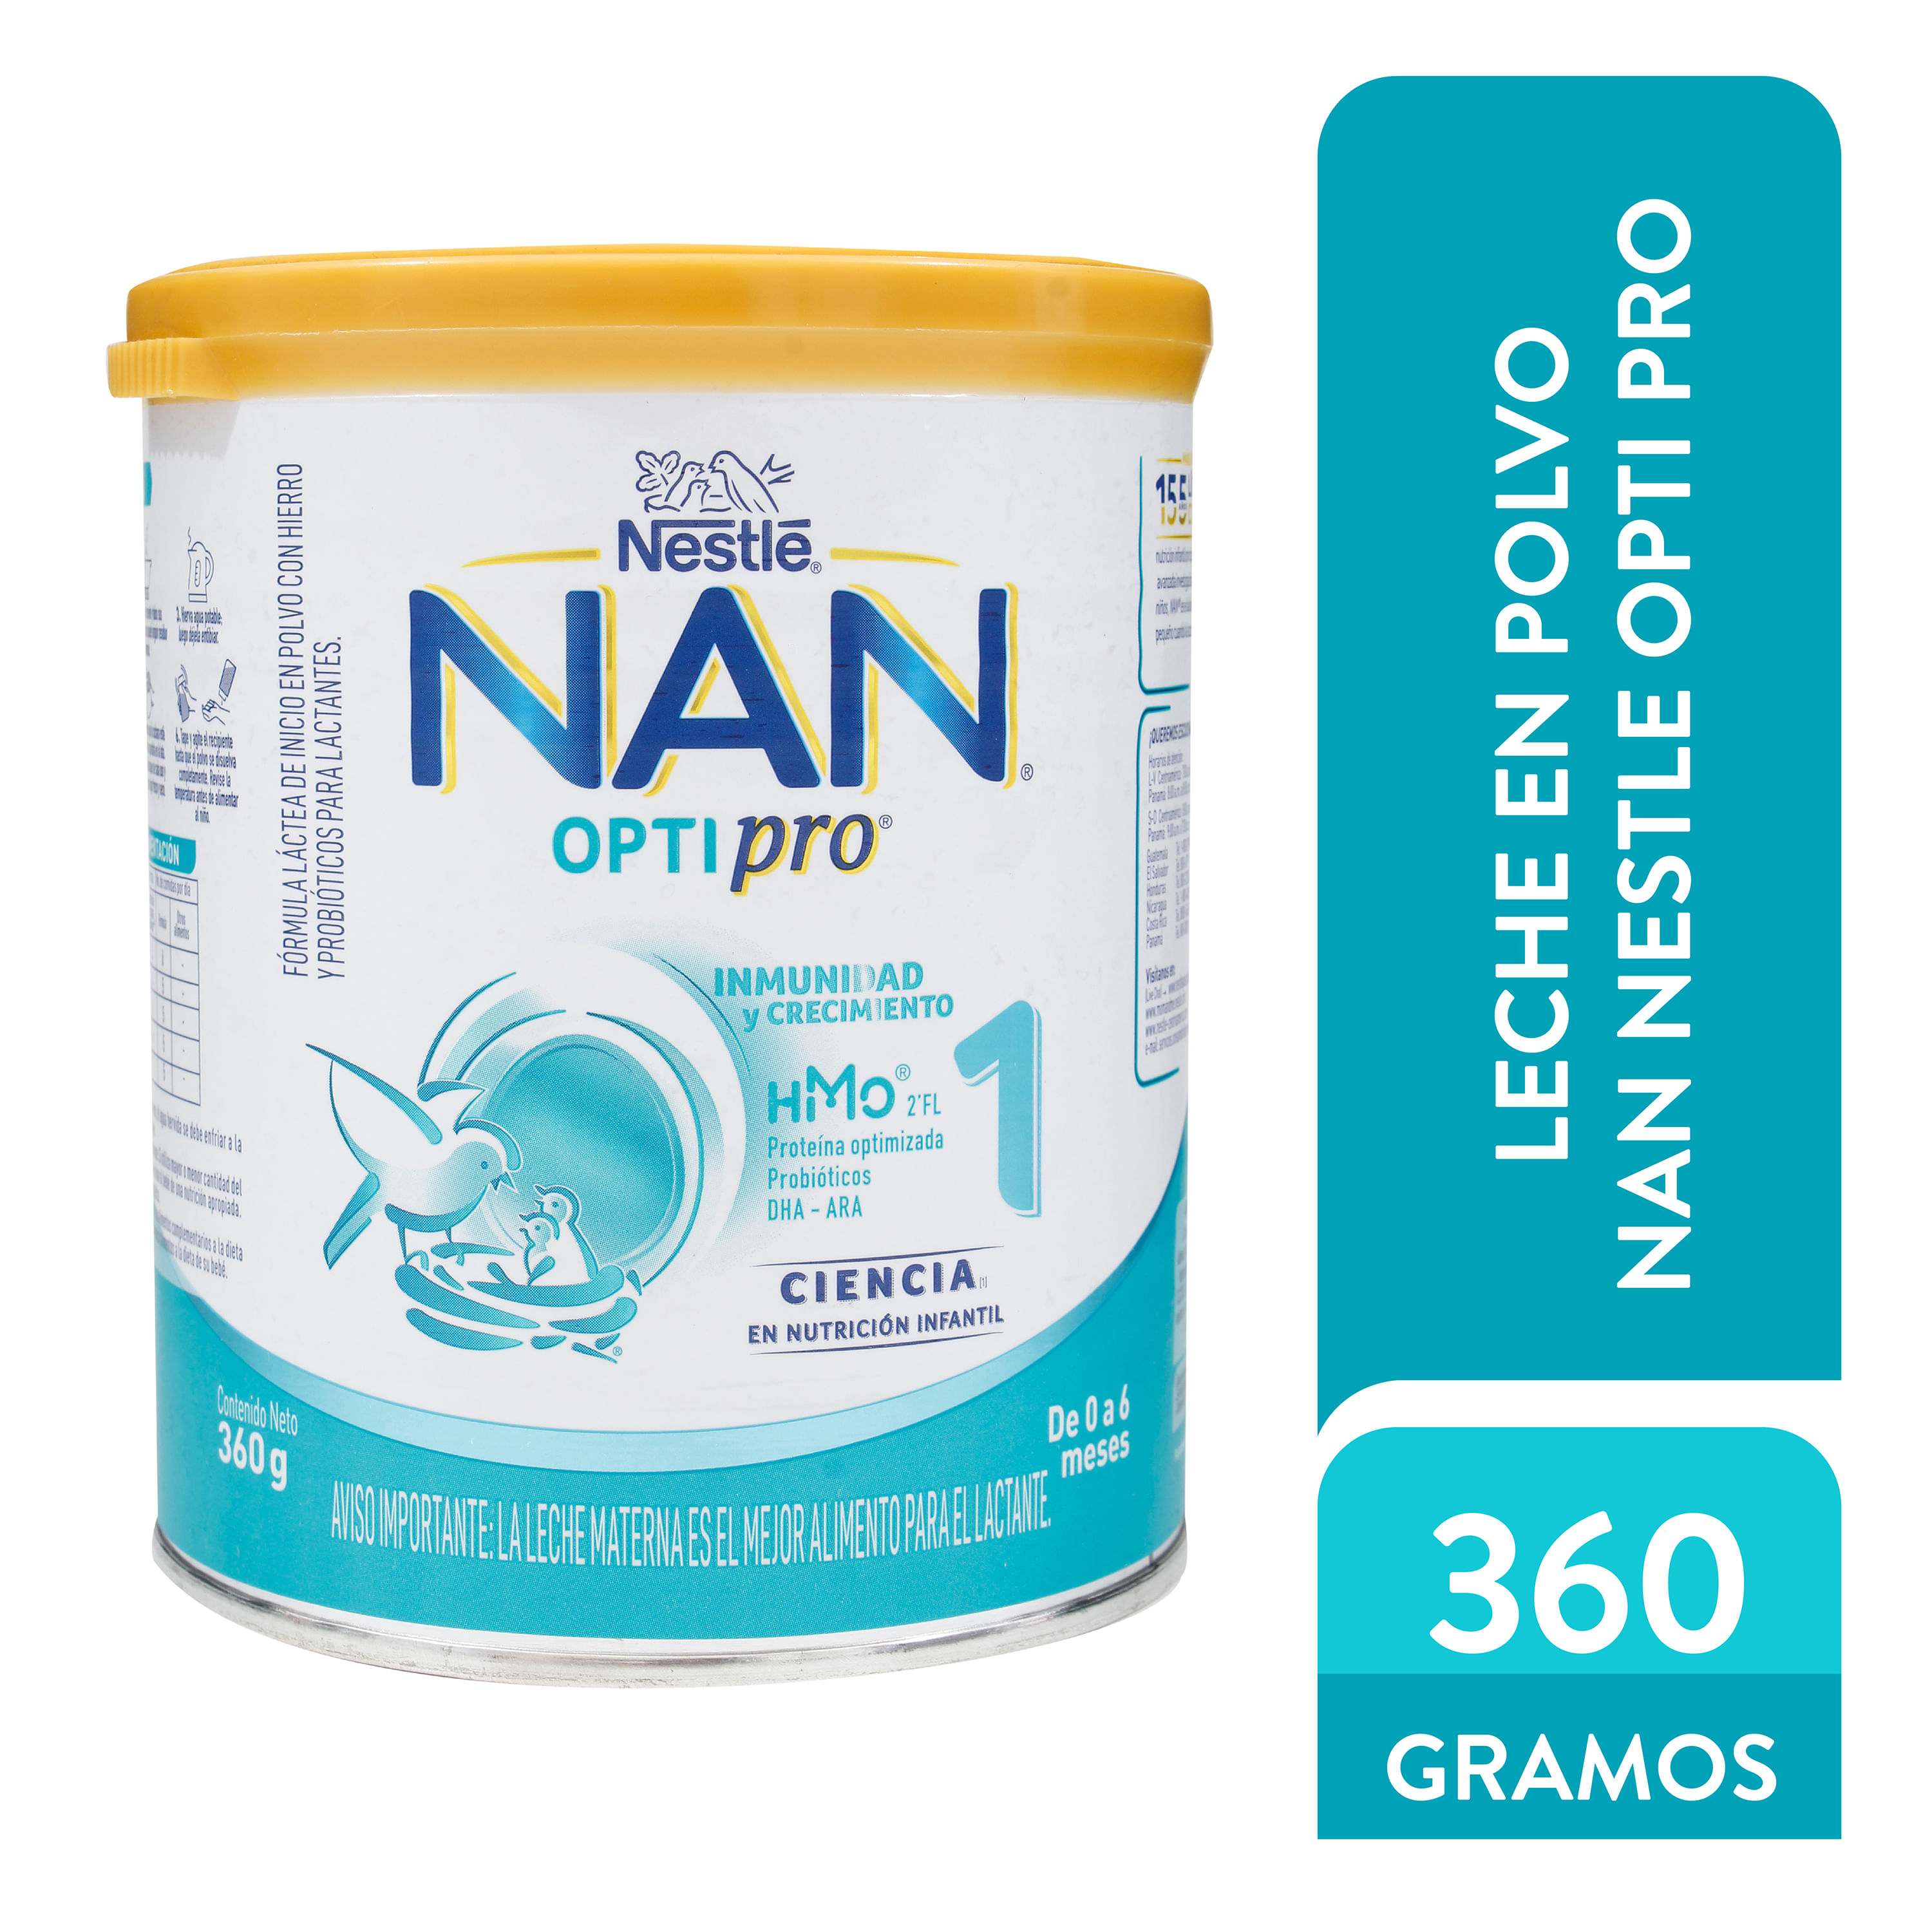 Fórmula Infantil NAN 1 Optimal Pro de 0 a 6 Meses, 360 gr.